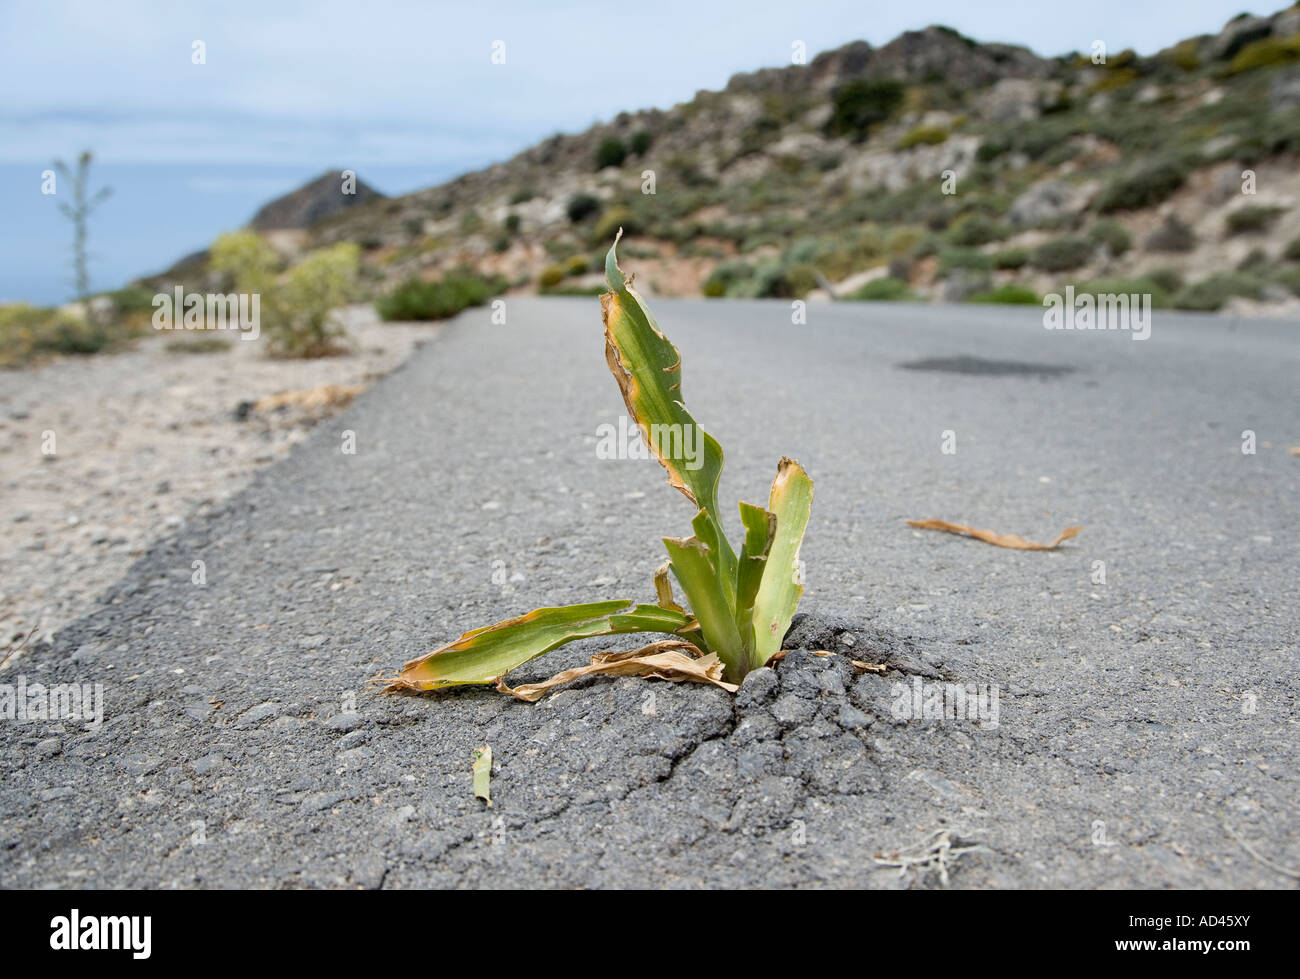 Un impianto rotto attraverso l'asfalto, Creta, Grecia Foto Stock